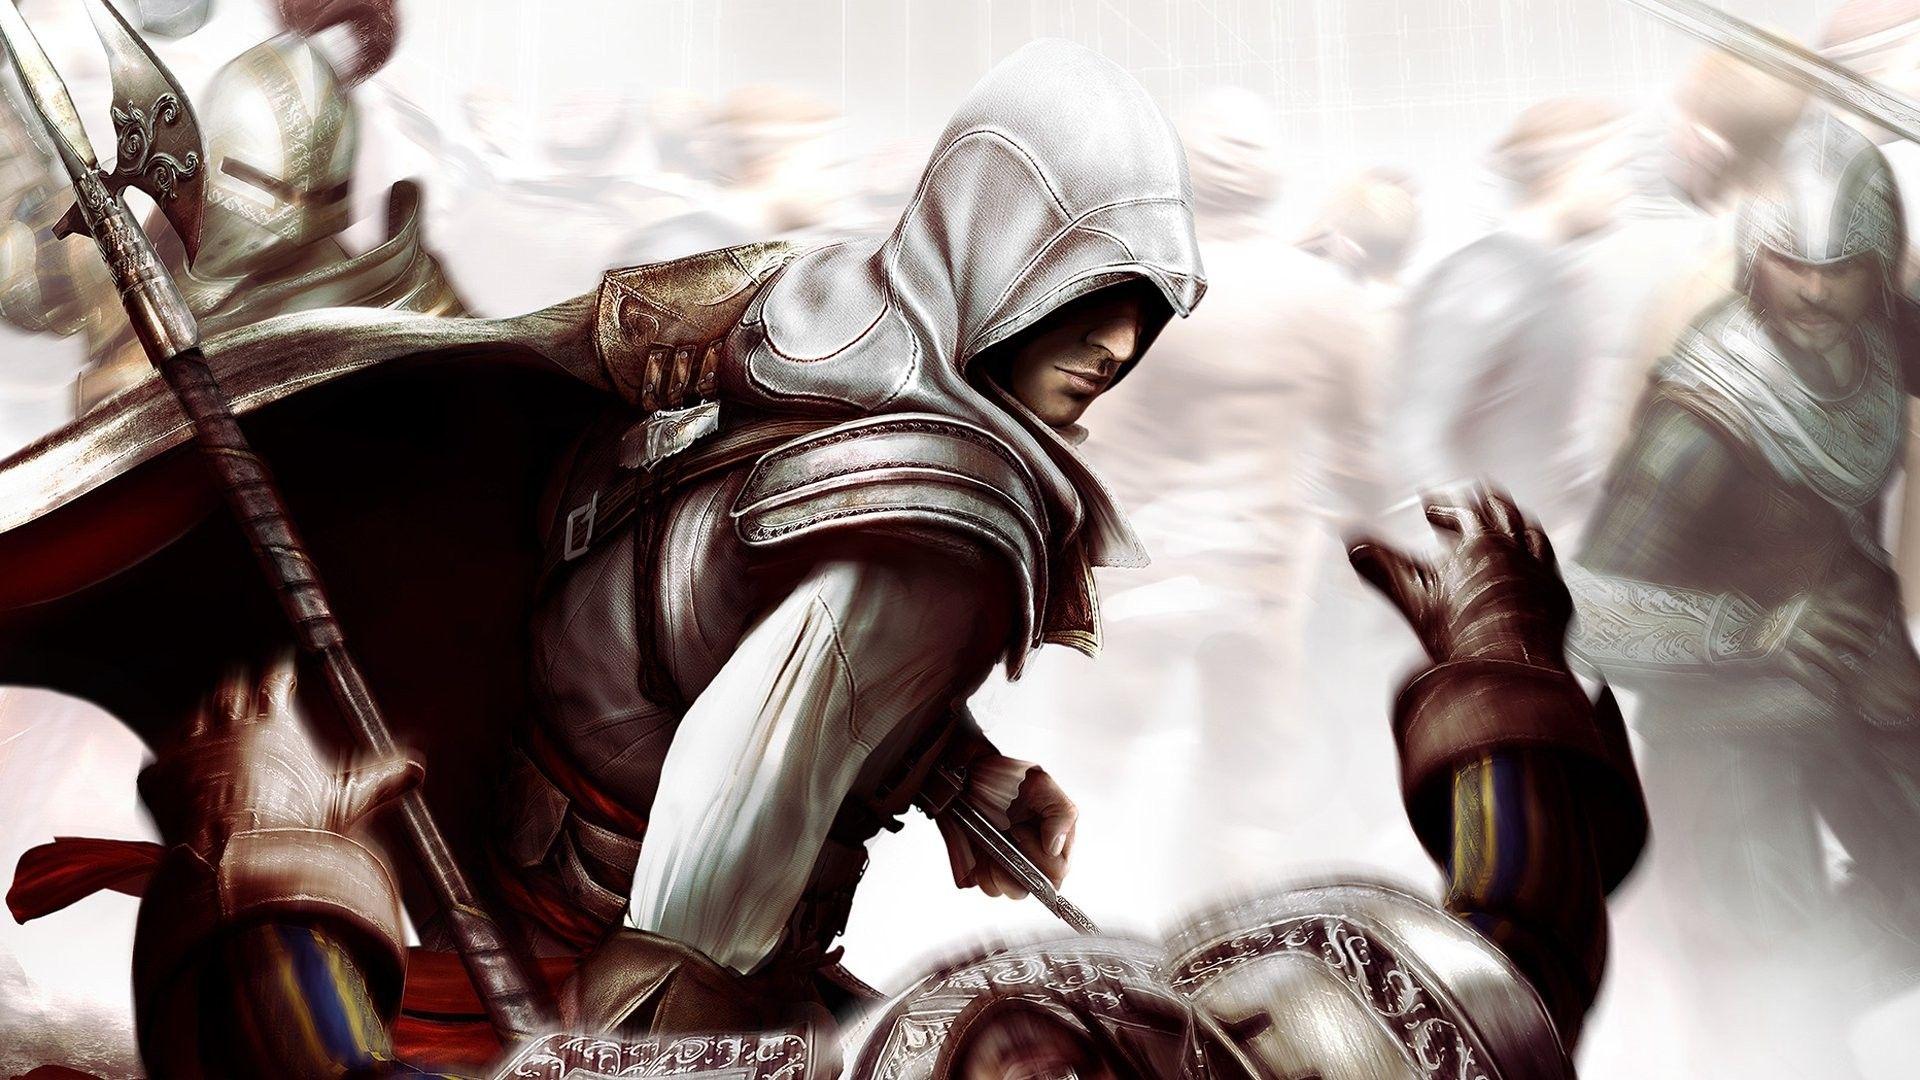 Wallpaper, 1920x1080 px, Assassins Creed Ezio Auditore da